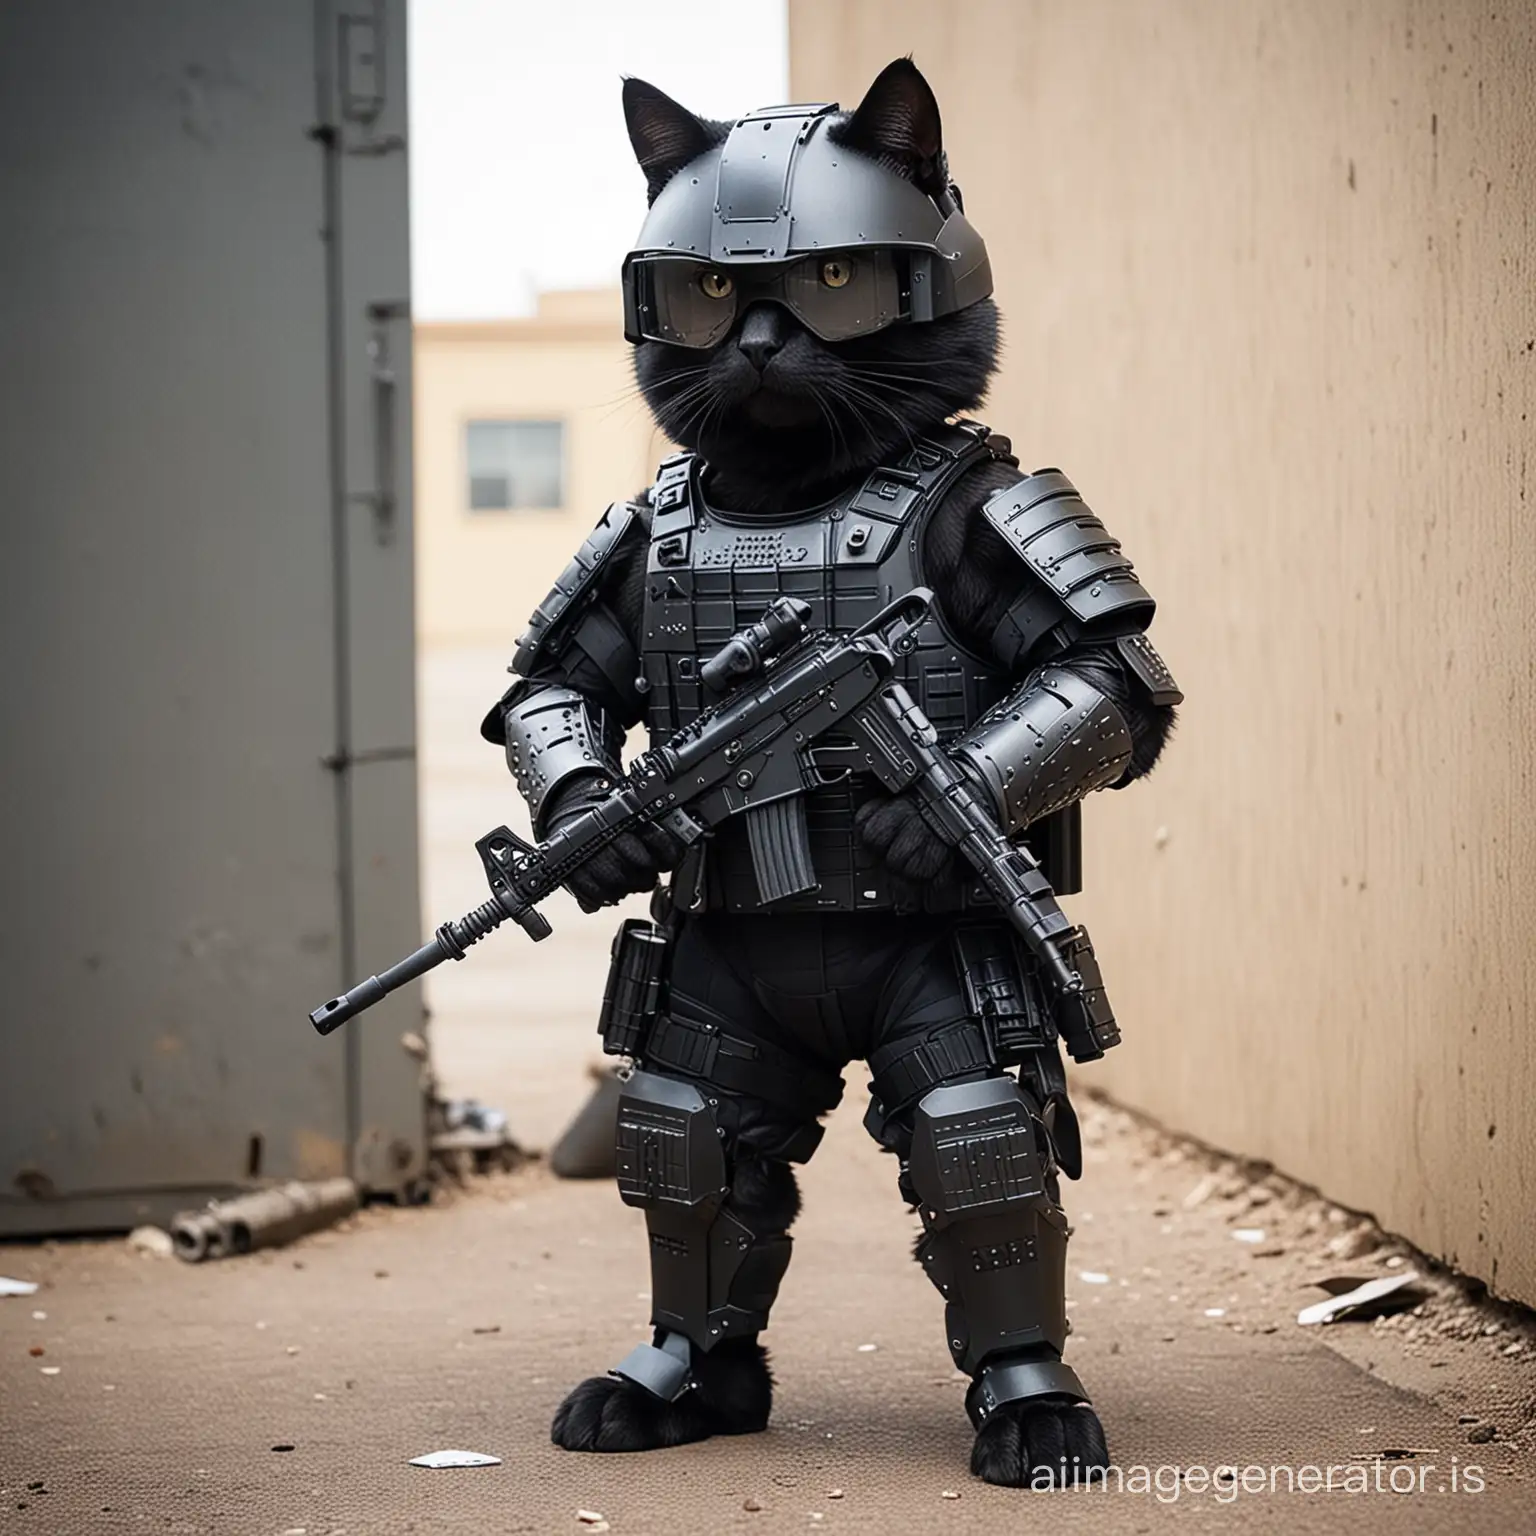 ARMORED SWAT CAT